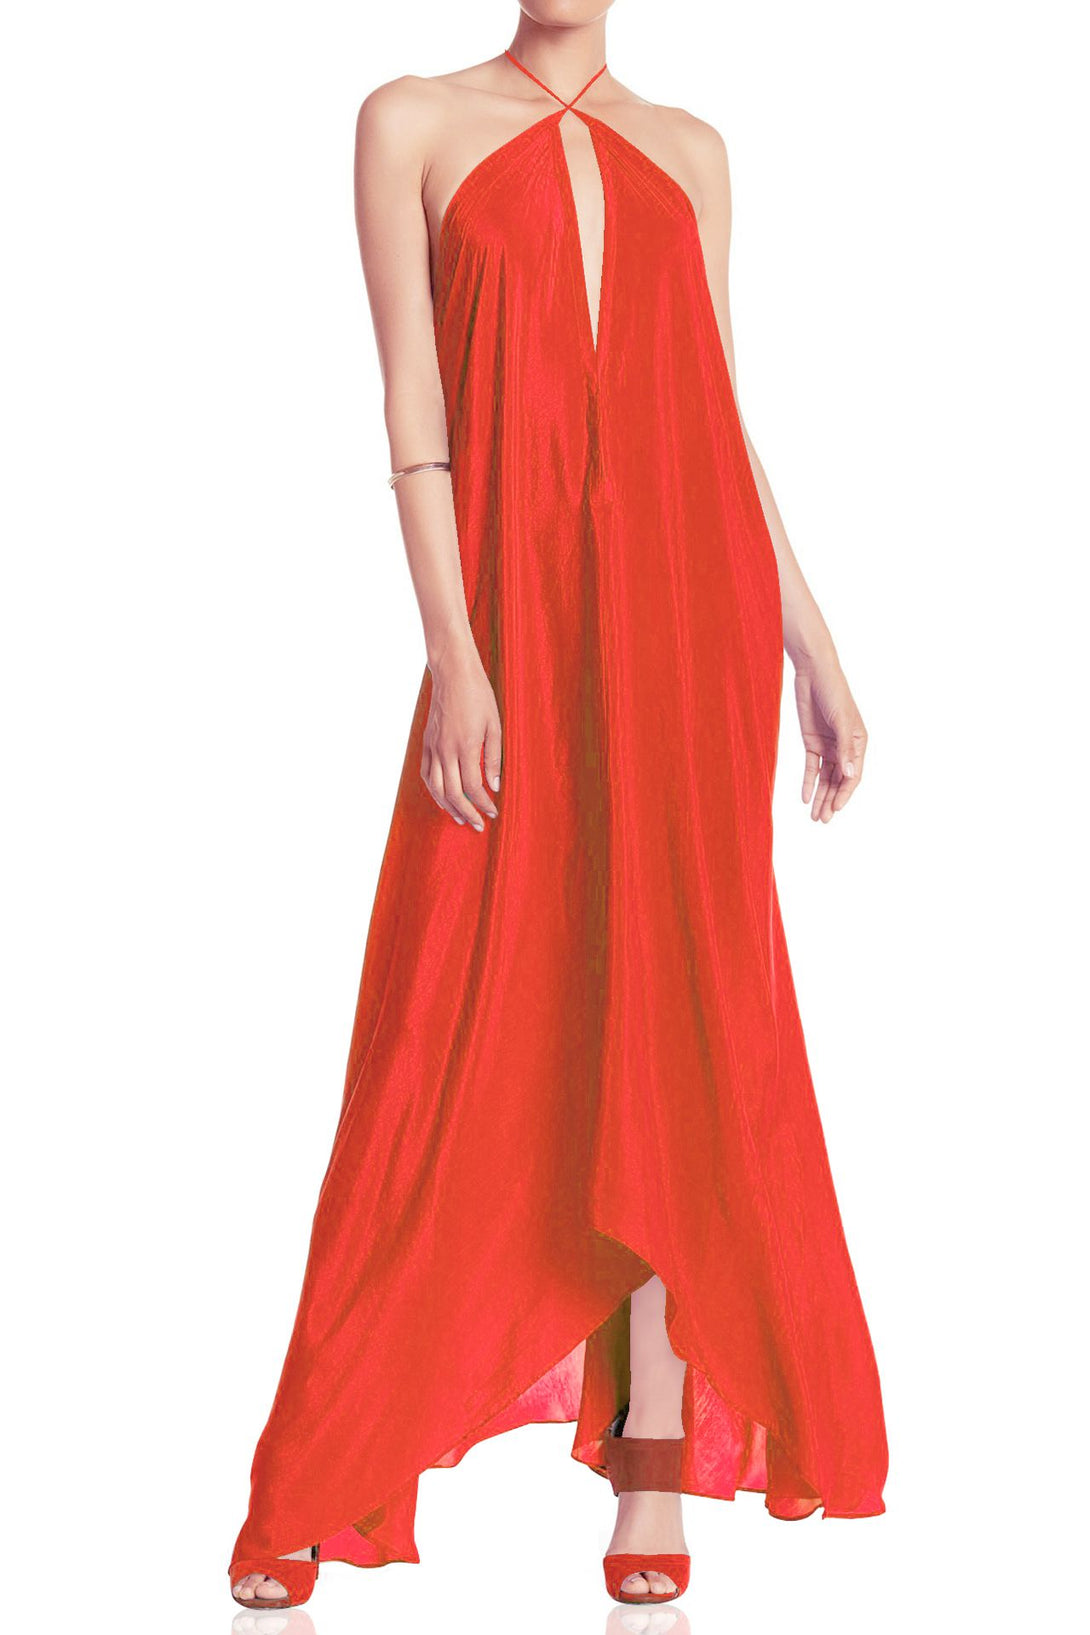  orange satin maxi dress, Shahida Parides, beach maxi dress, long summer dresses, backless maxi dress,